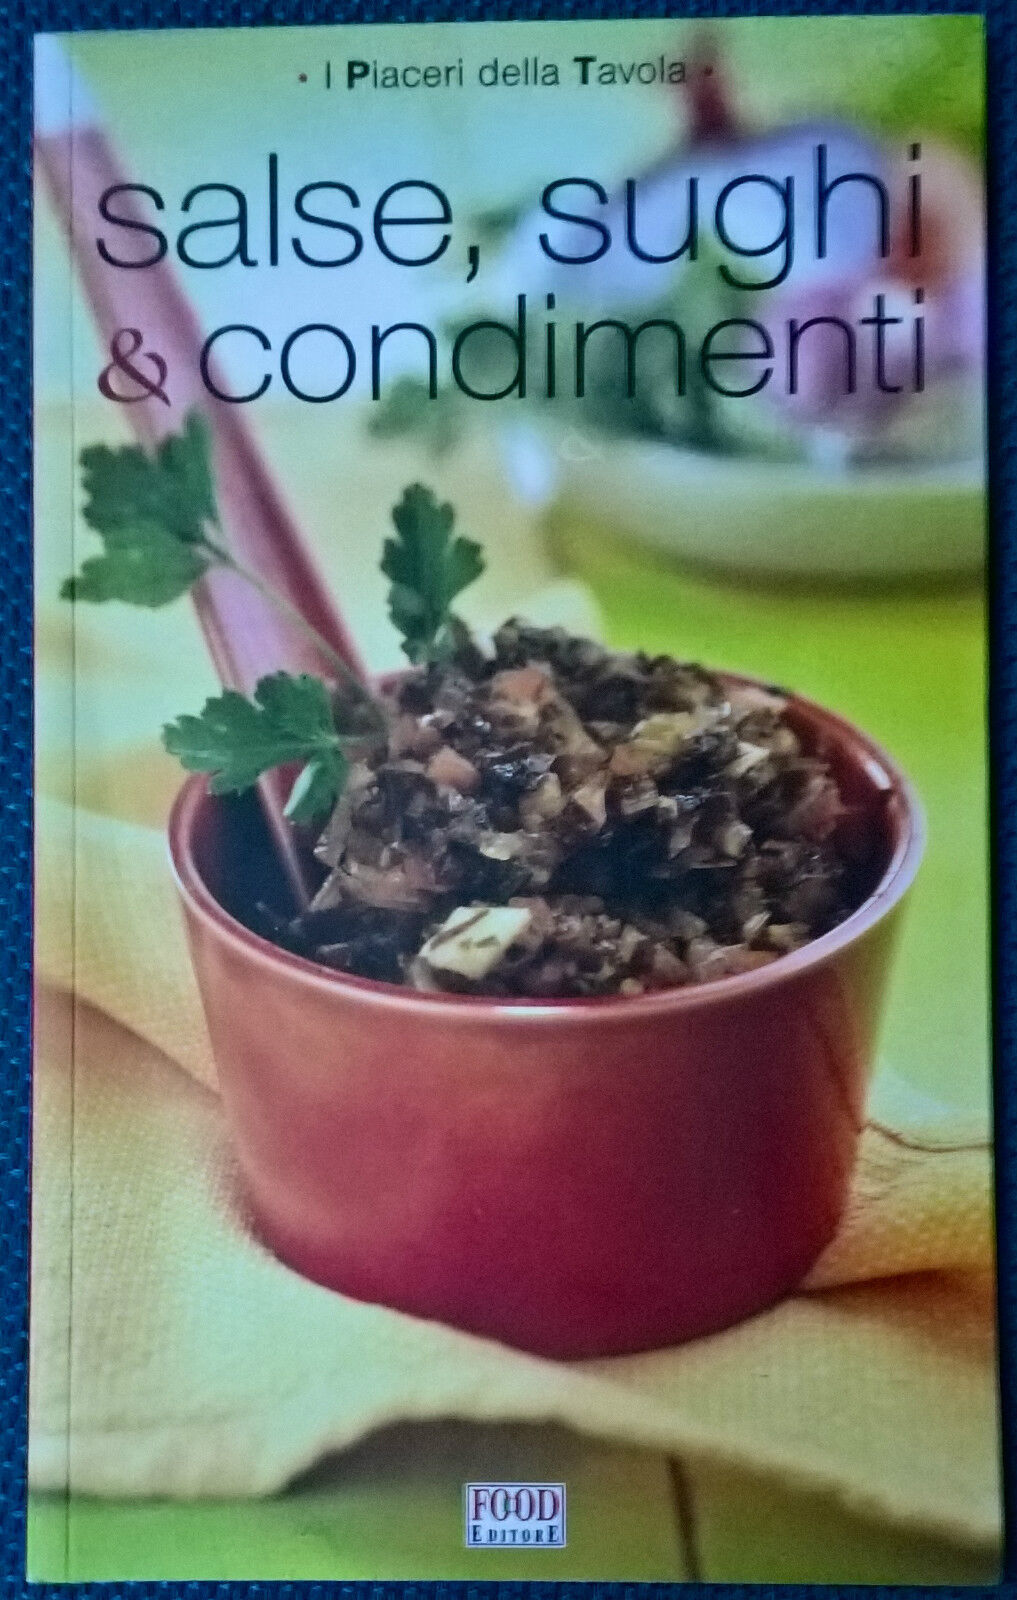 Salse, sughi & condimenti. I piaceri della tavola - Cagnoni - Food, 2013 - L libro usato